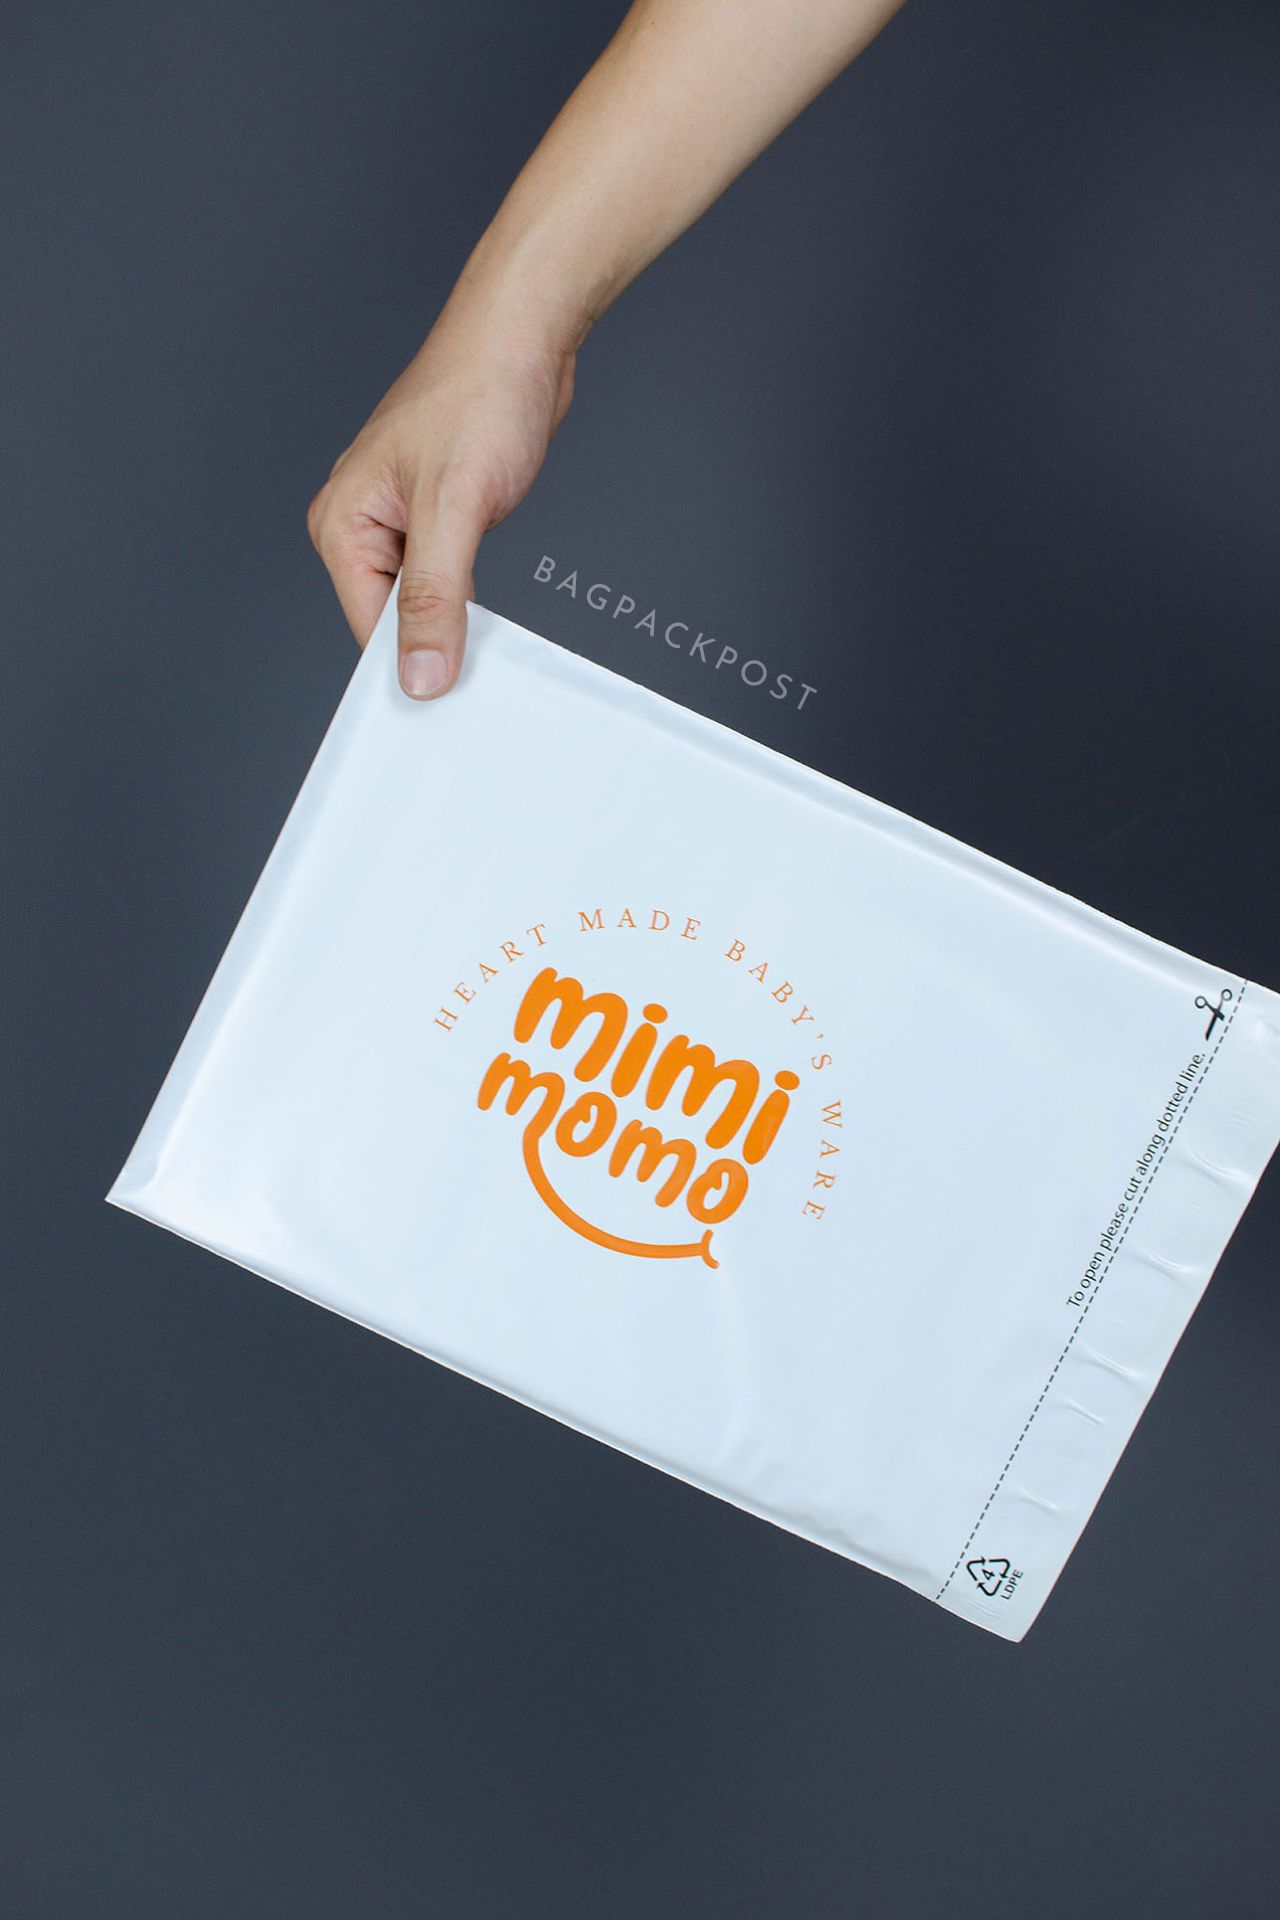 ผลิตถุงไปรษณีย์ ซองไปรษณีย์พิมพ์ลาย mimimomo ซองไปรษณีย์สีขาว ถุงไปรษณีย์พิมพ์ลาย 1 BagPackPost